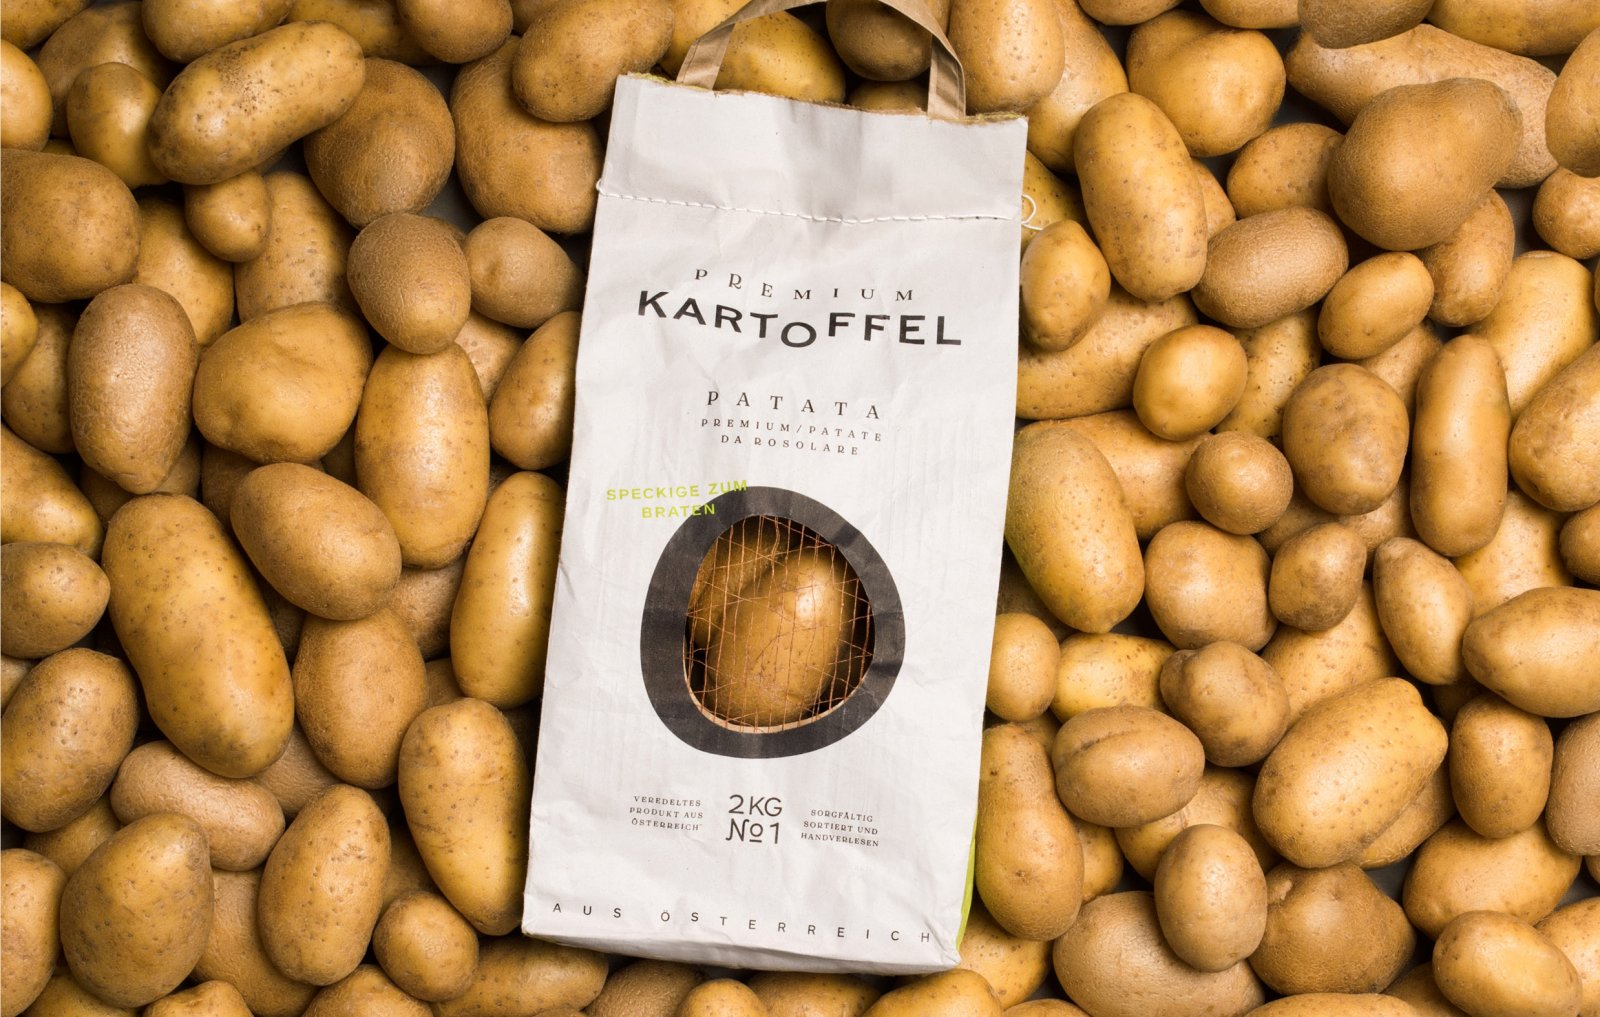 Kartoffel马铃薯包装设计